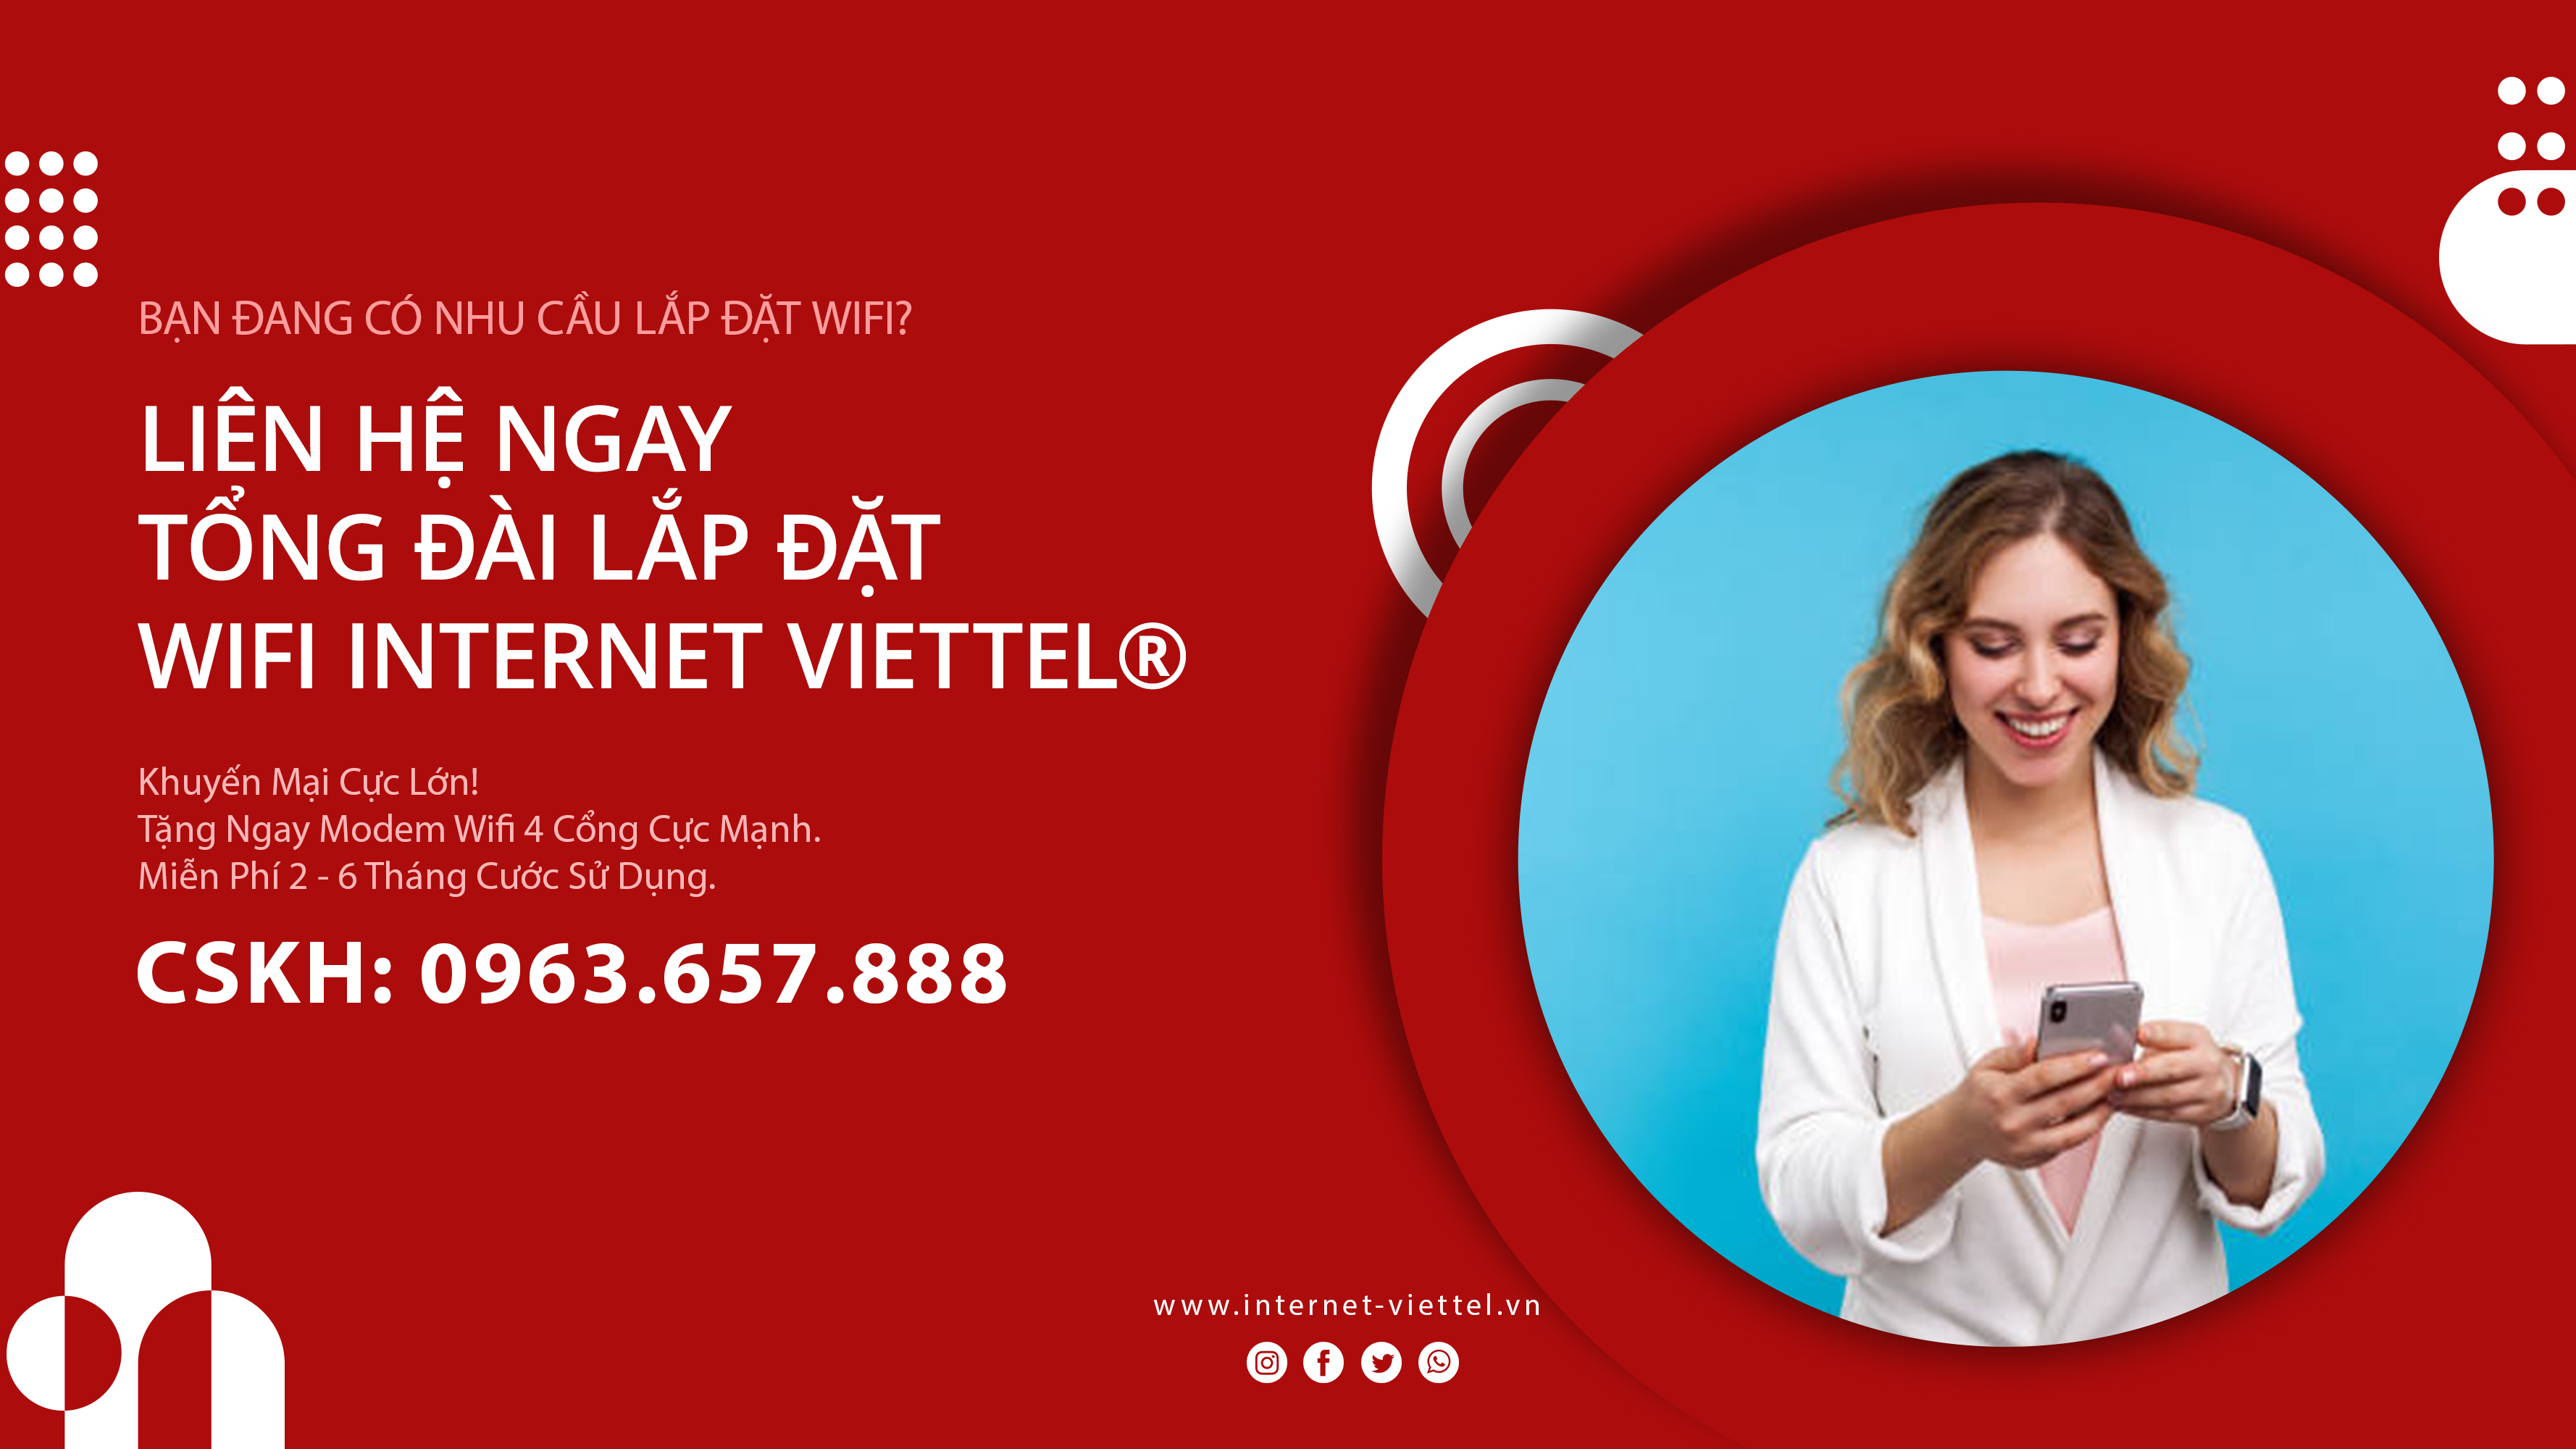 Tổng Đài Lắp Đặt Wifi Internet Viettel